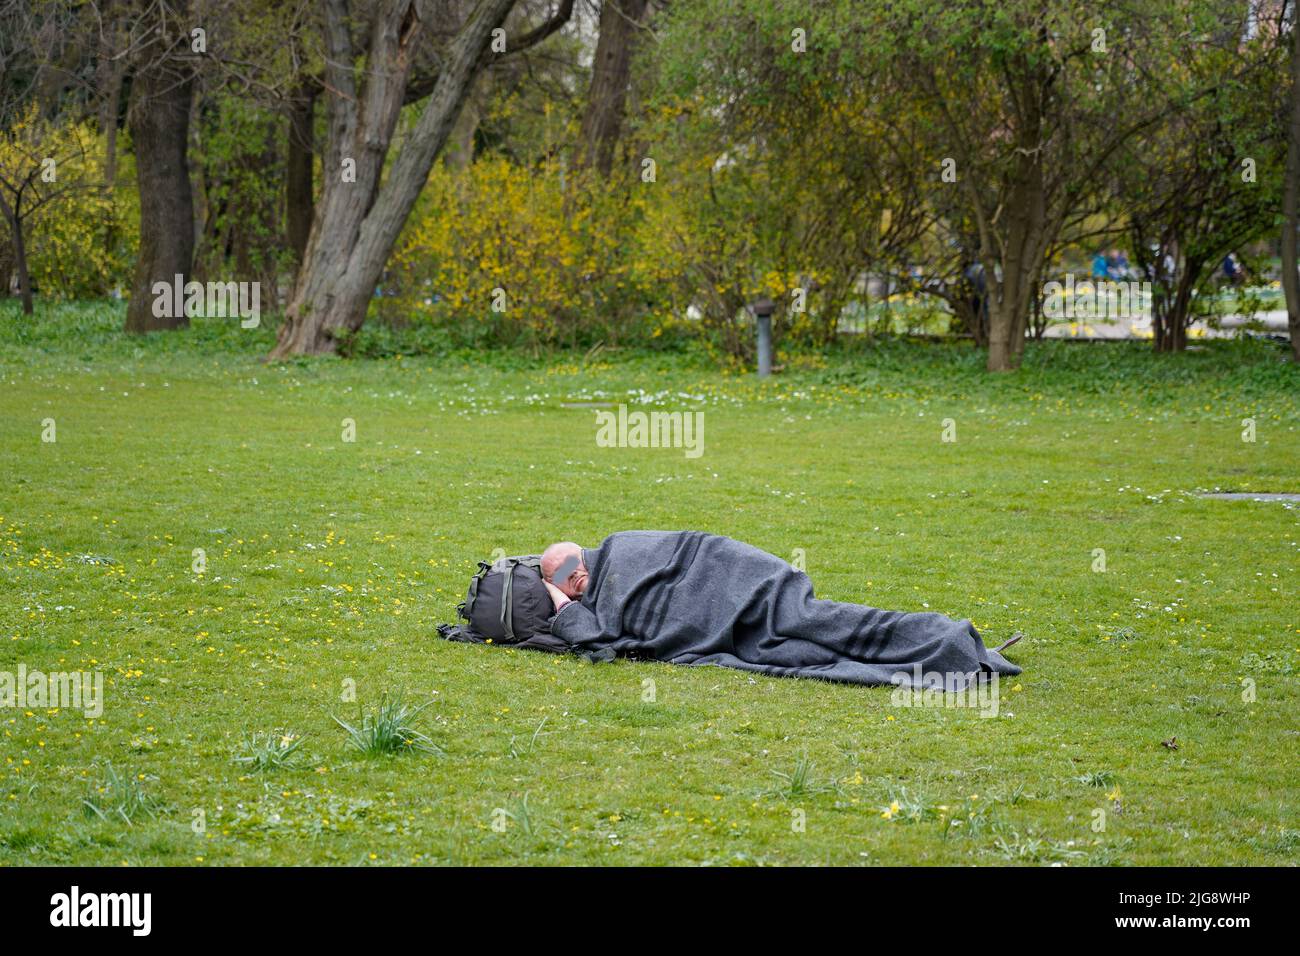 Deutschland, Bayern, München, Alter Botanischer Garten, Obdachloser, Schlafen auf einer Wiese Stockfoto